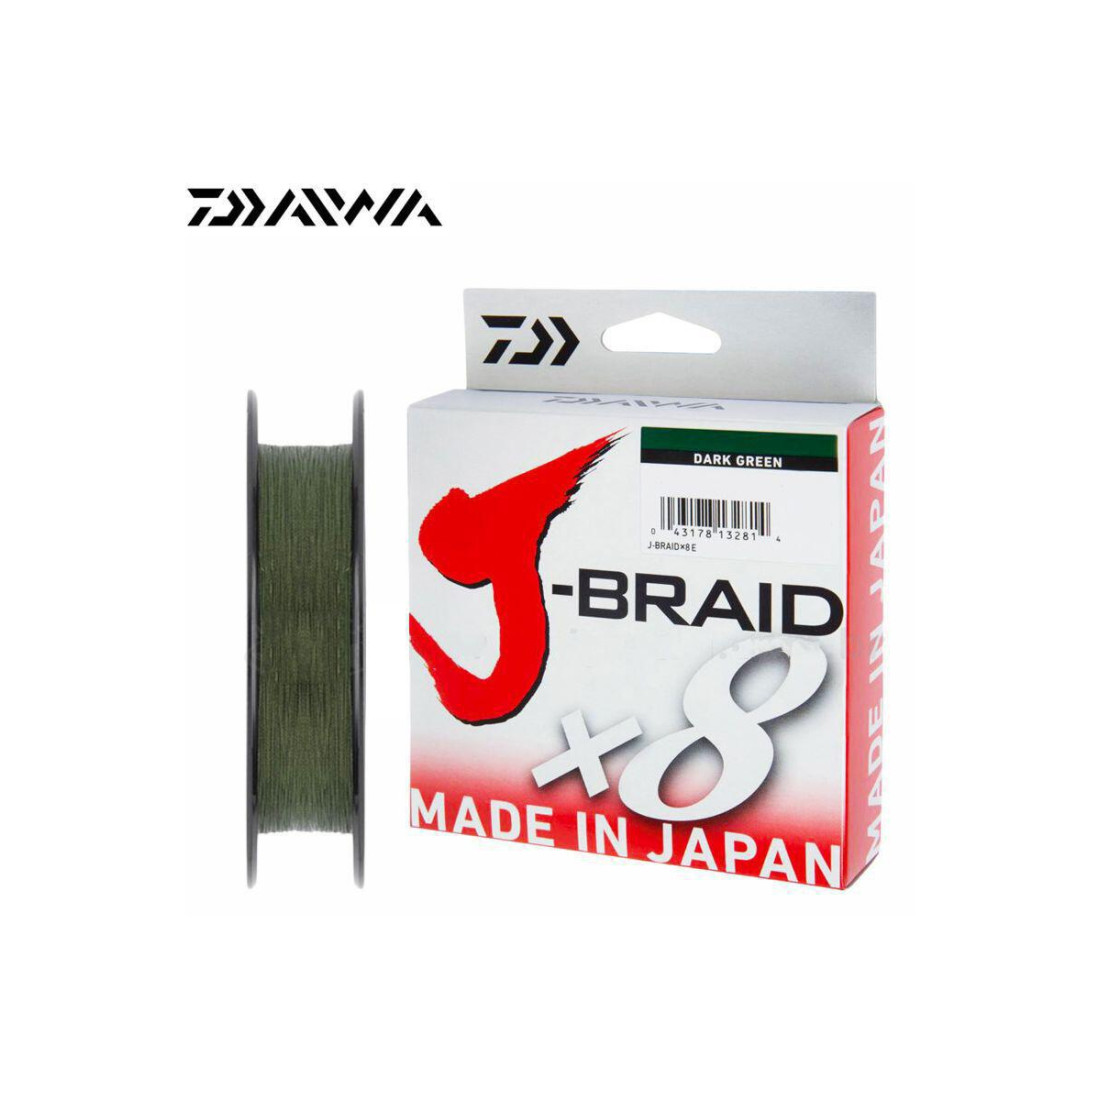 Daiwa J-Braid Braided DARK GREEN Line 80lb 330yd .017" .43mm JB8U80-300DG 